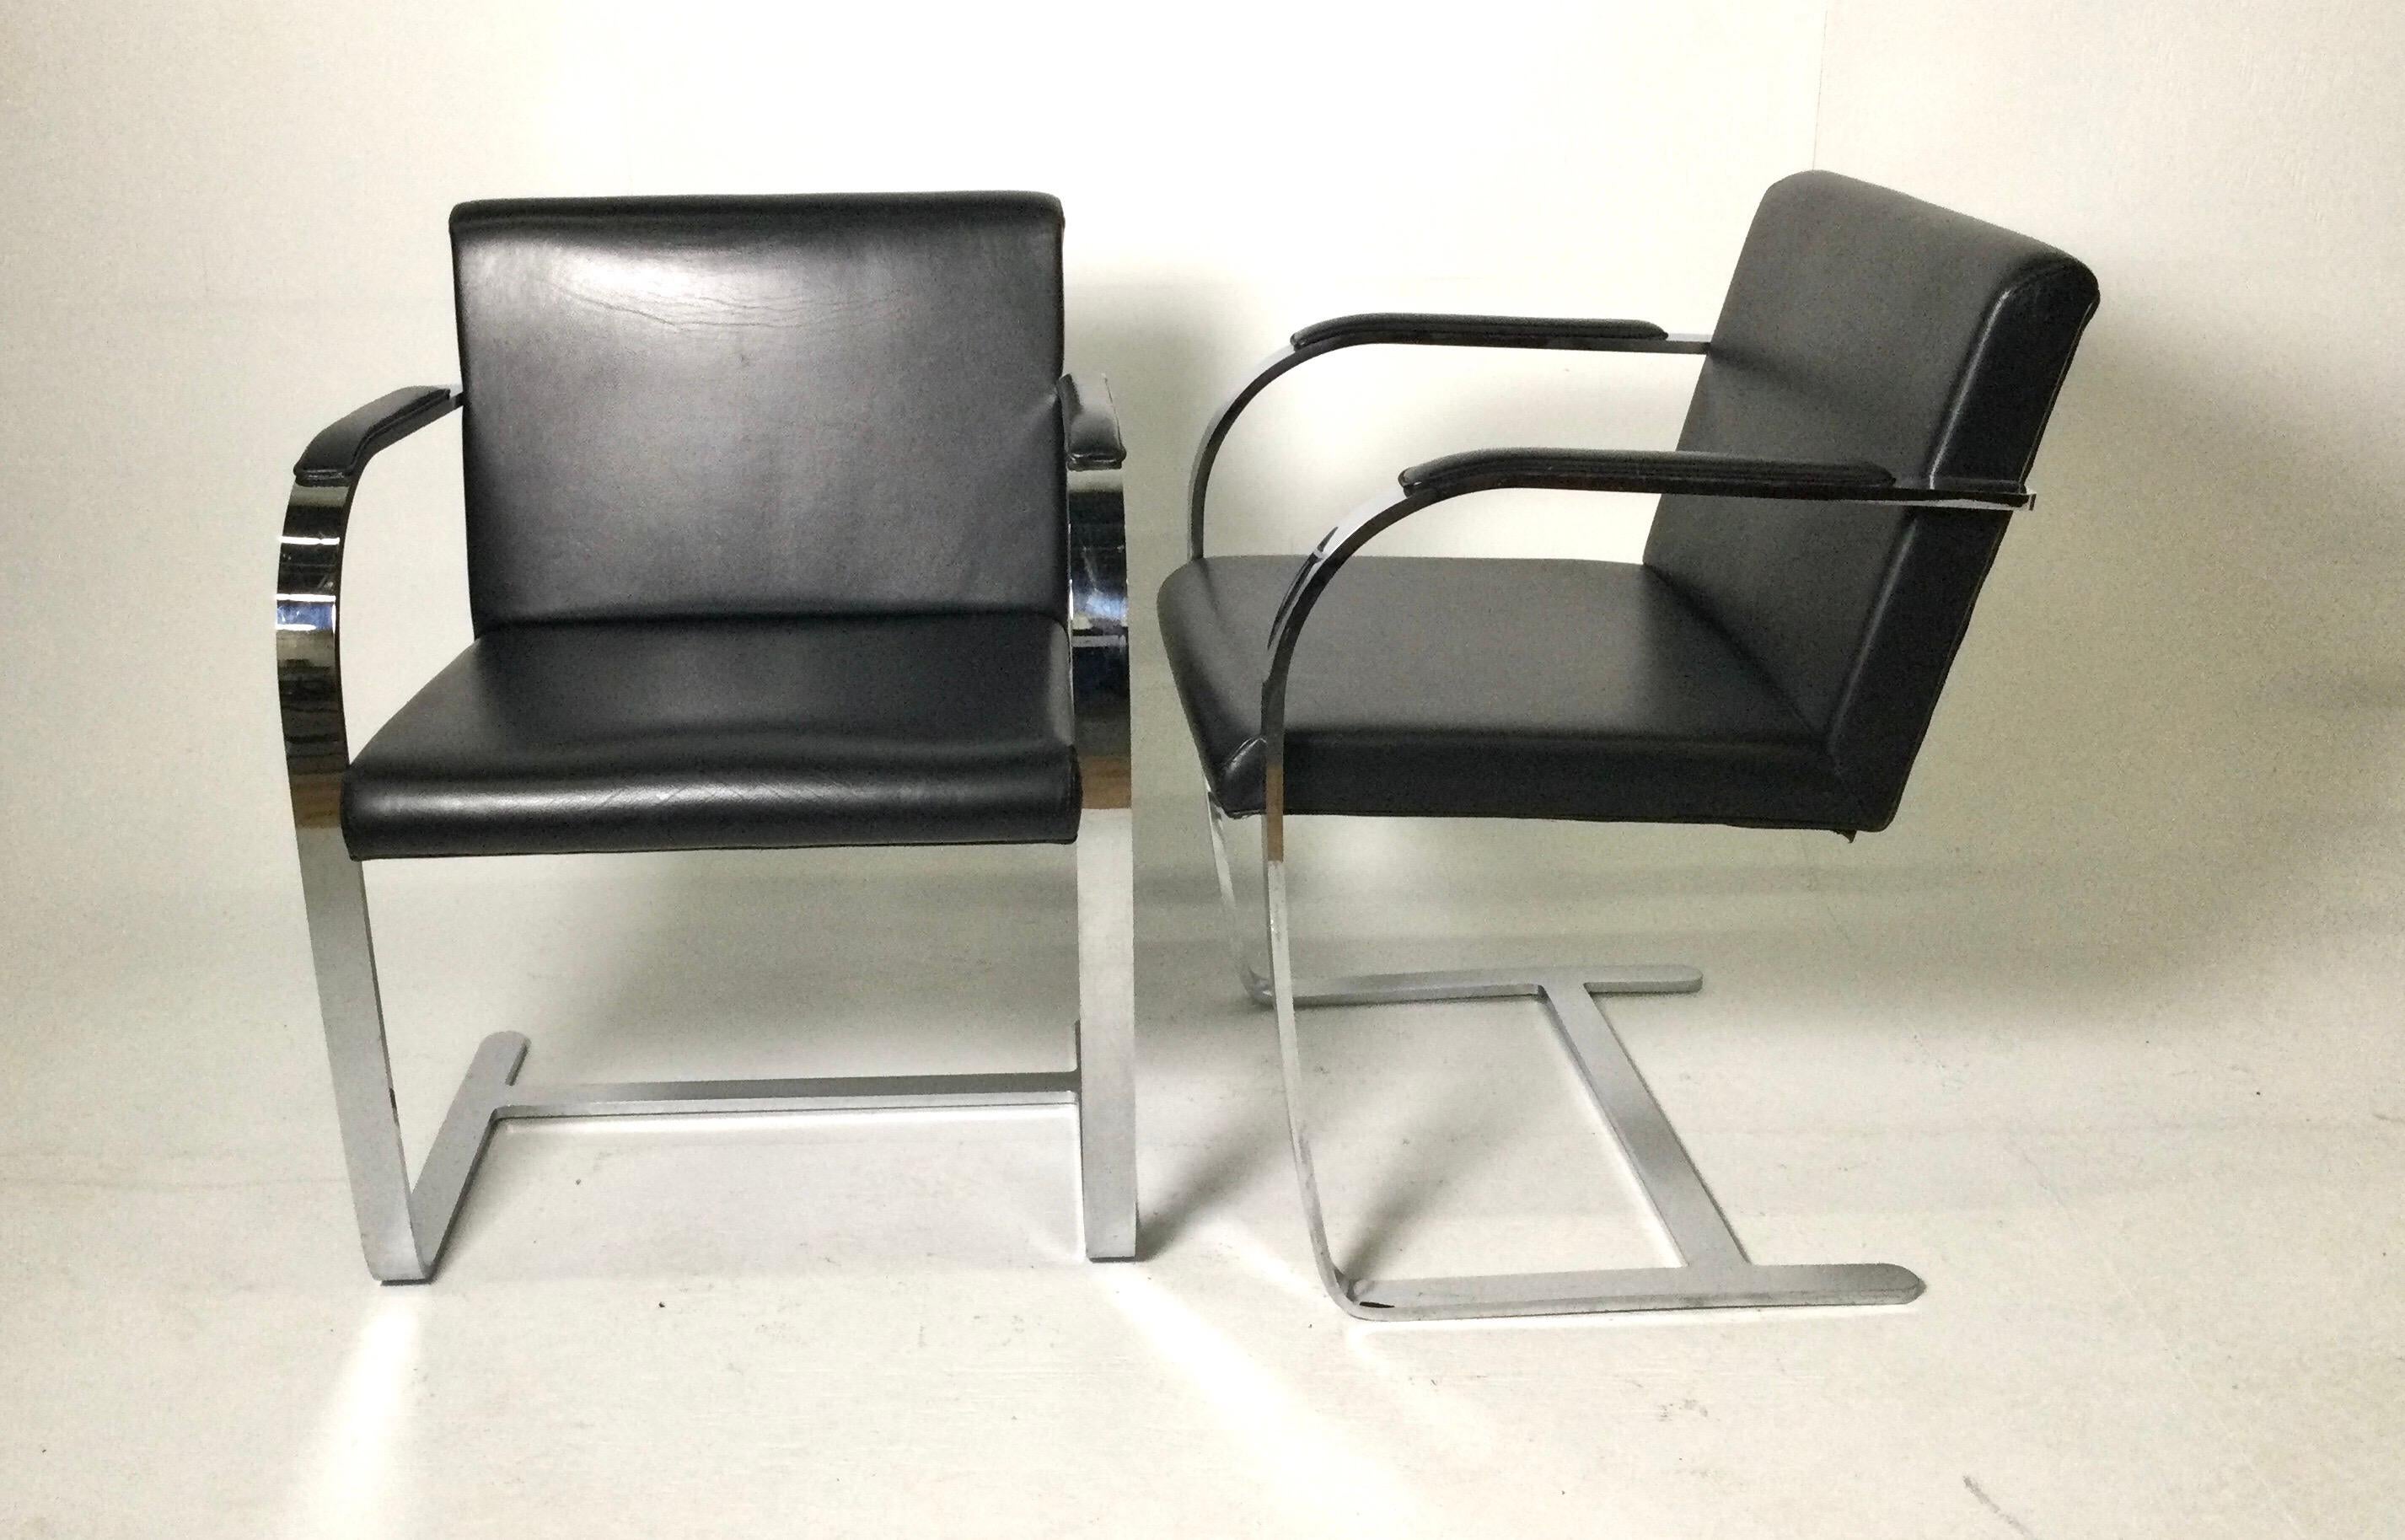 Zwei flache Barstühle im Bruno-Stil von Knoll mit schwarzer Lederpolsterung. Gekauft im D & D-Gebäude in NYC in den frühen 1980er Jahren. Keine Knoll-Markierungen, aber schwer. Sehr gemütlich. Sehr geringe, altersgemäße Gebrauchsspuren.